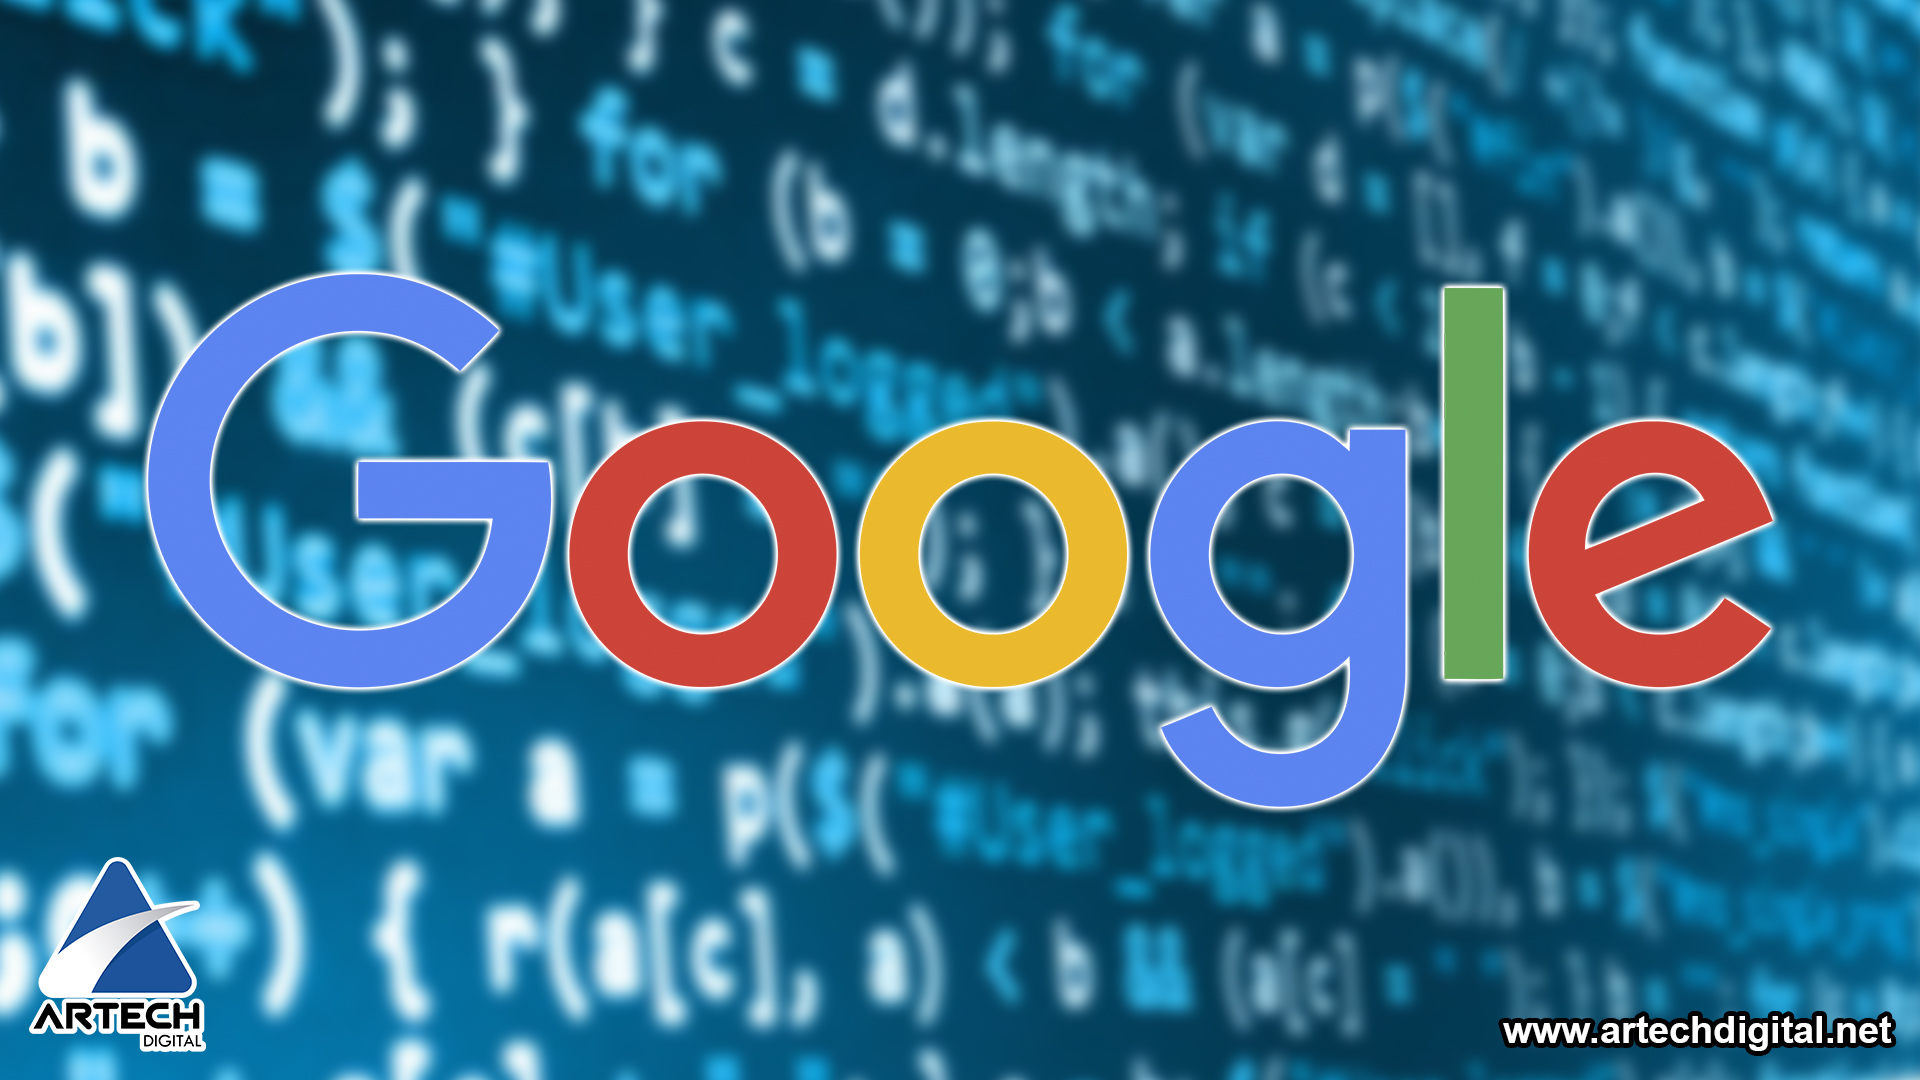 artech digital - Cambios en los algoritmos de Google